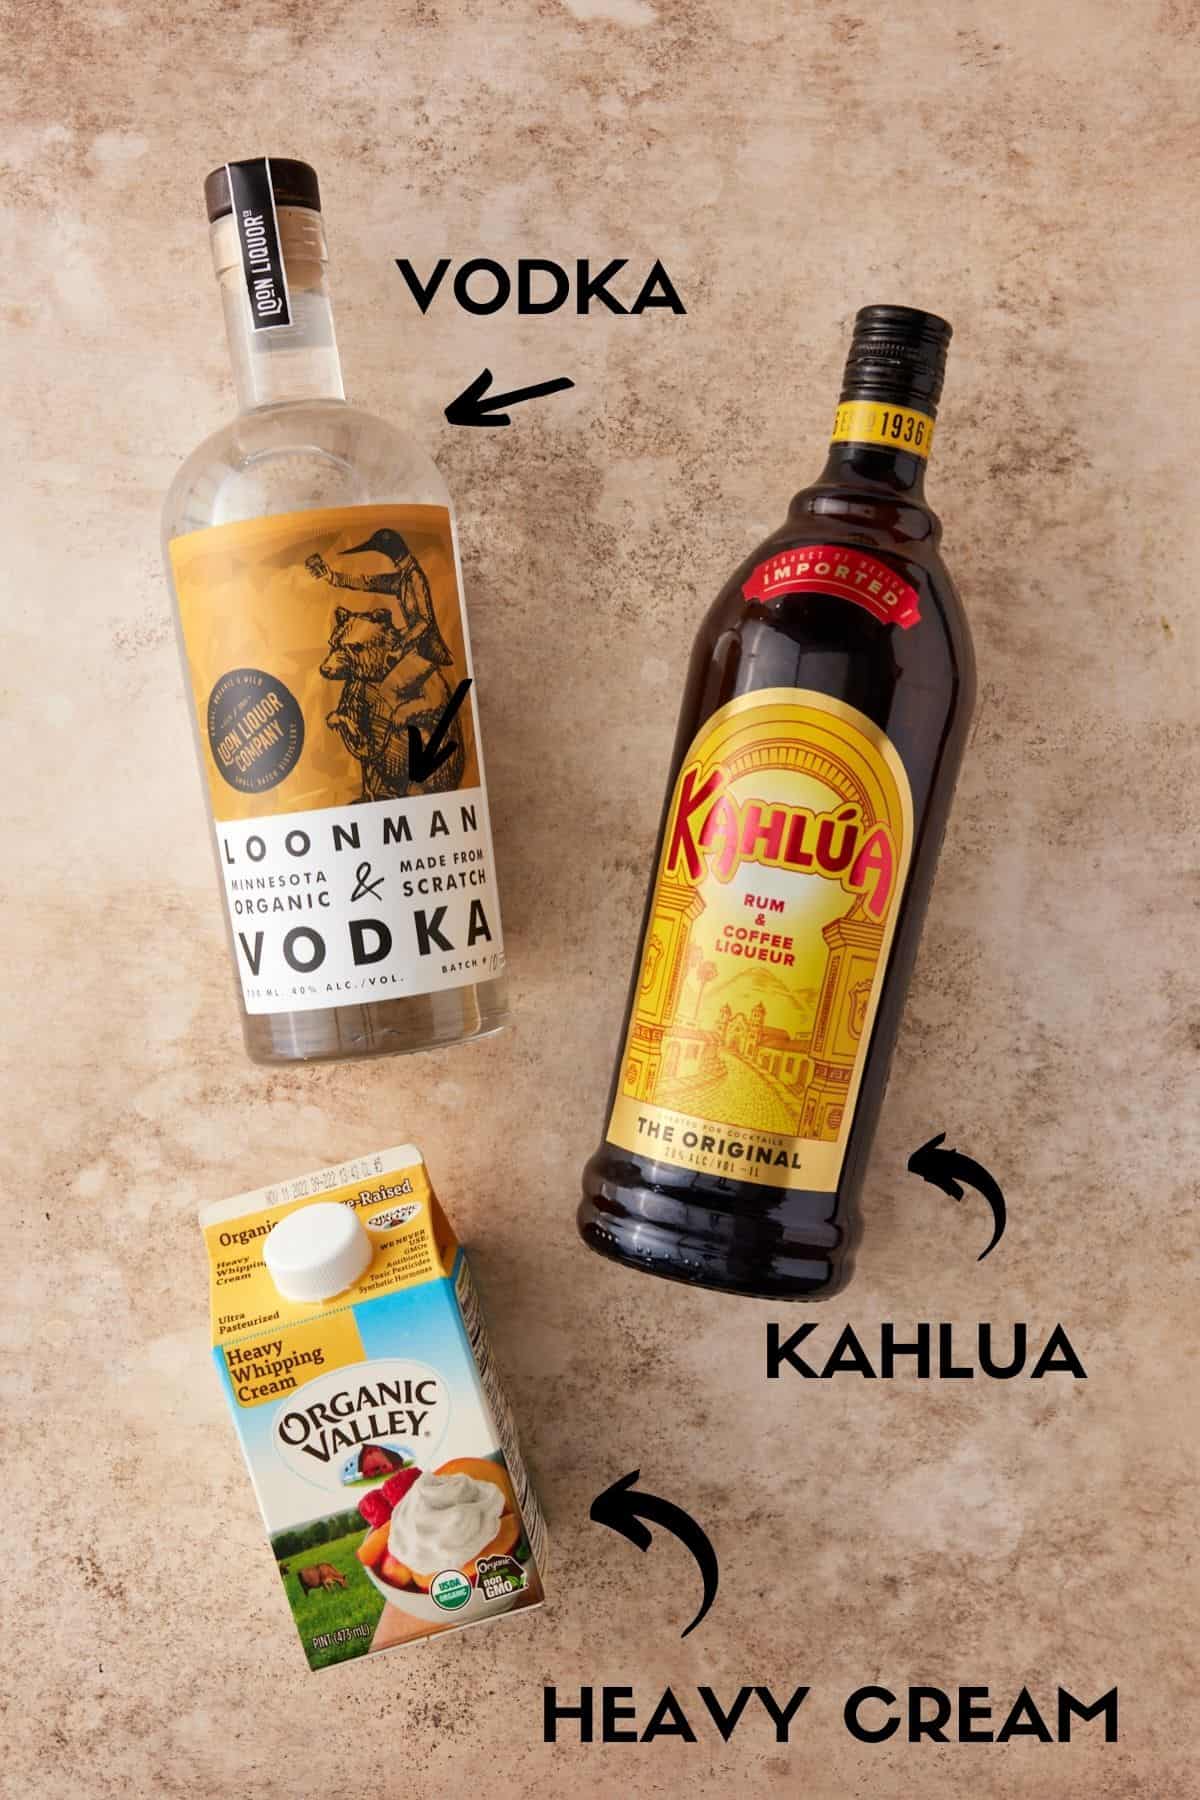 Bottles of Kahlua, vodka and heavy cream.